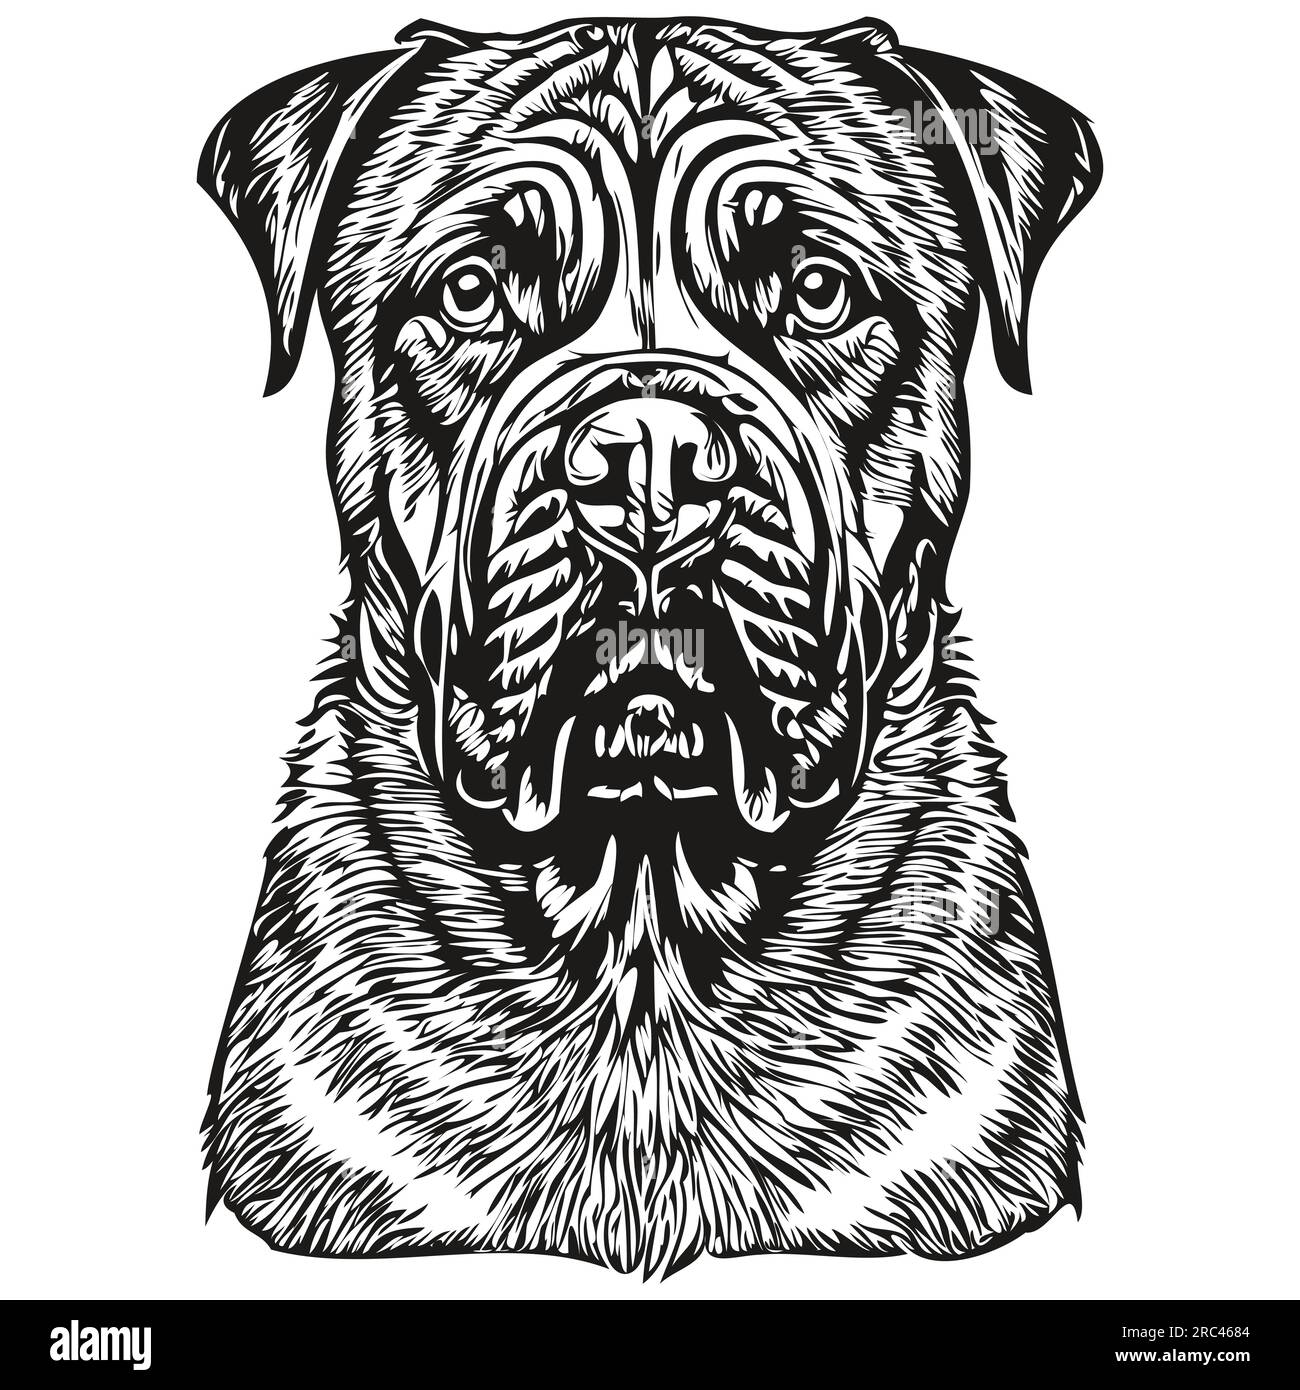 Bullmastiff chien gravé portrait vectoriel, dessin vintage dessin animé visage en noir et blanc Illustration de Vecteur